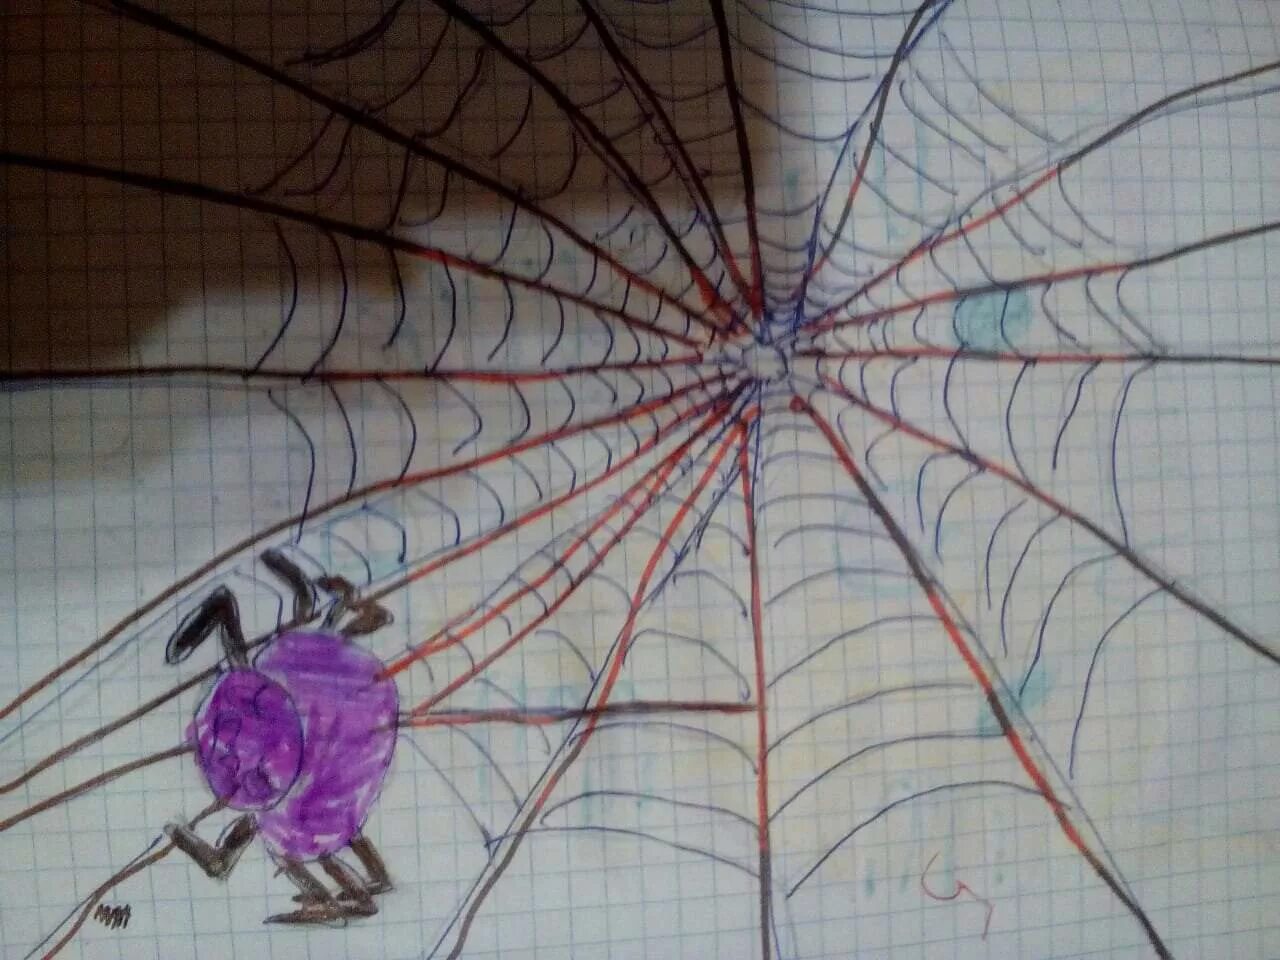 Паук сплел паутину как показано на рисунке. Паутина из ниток своими руками. Паутина рисунок. Рисование волшебной паутины, сплетенной пауком.. Паук из ниток.